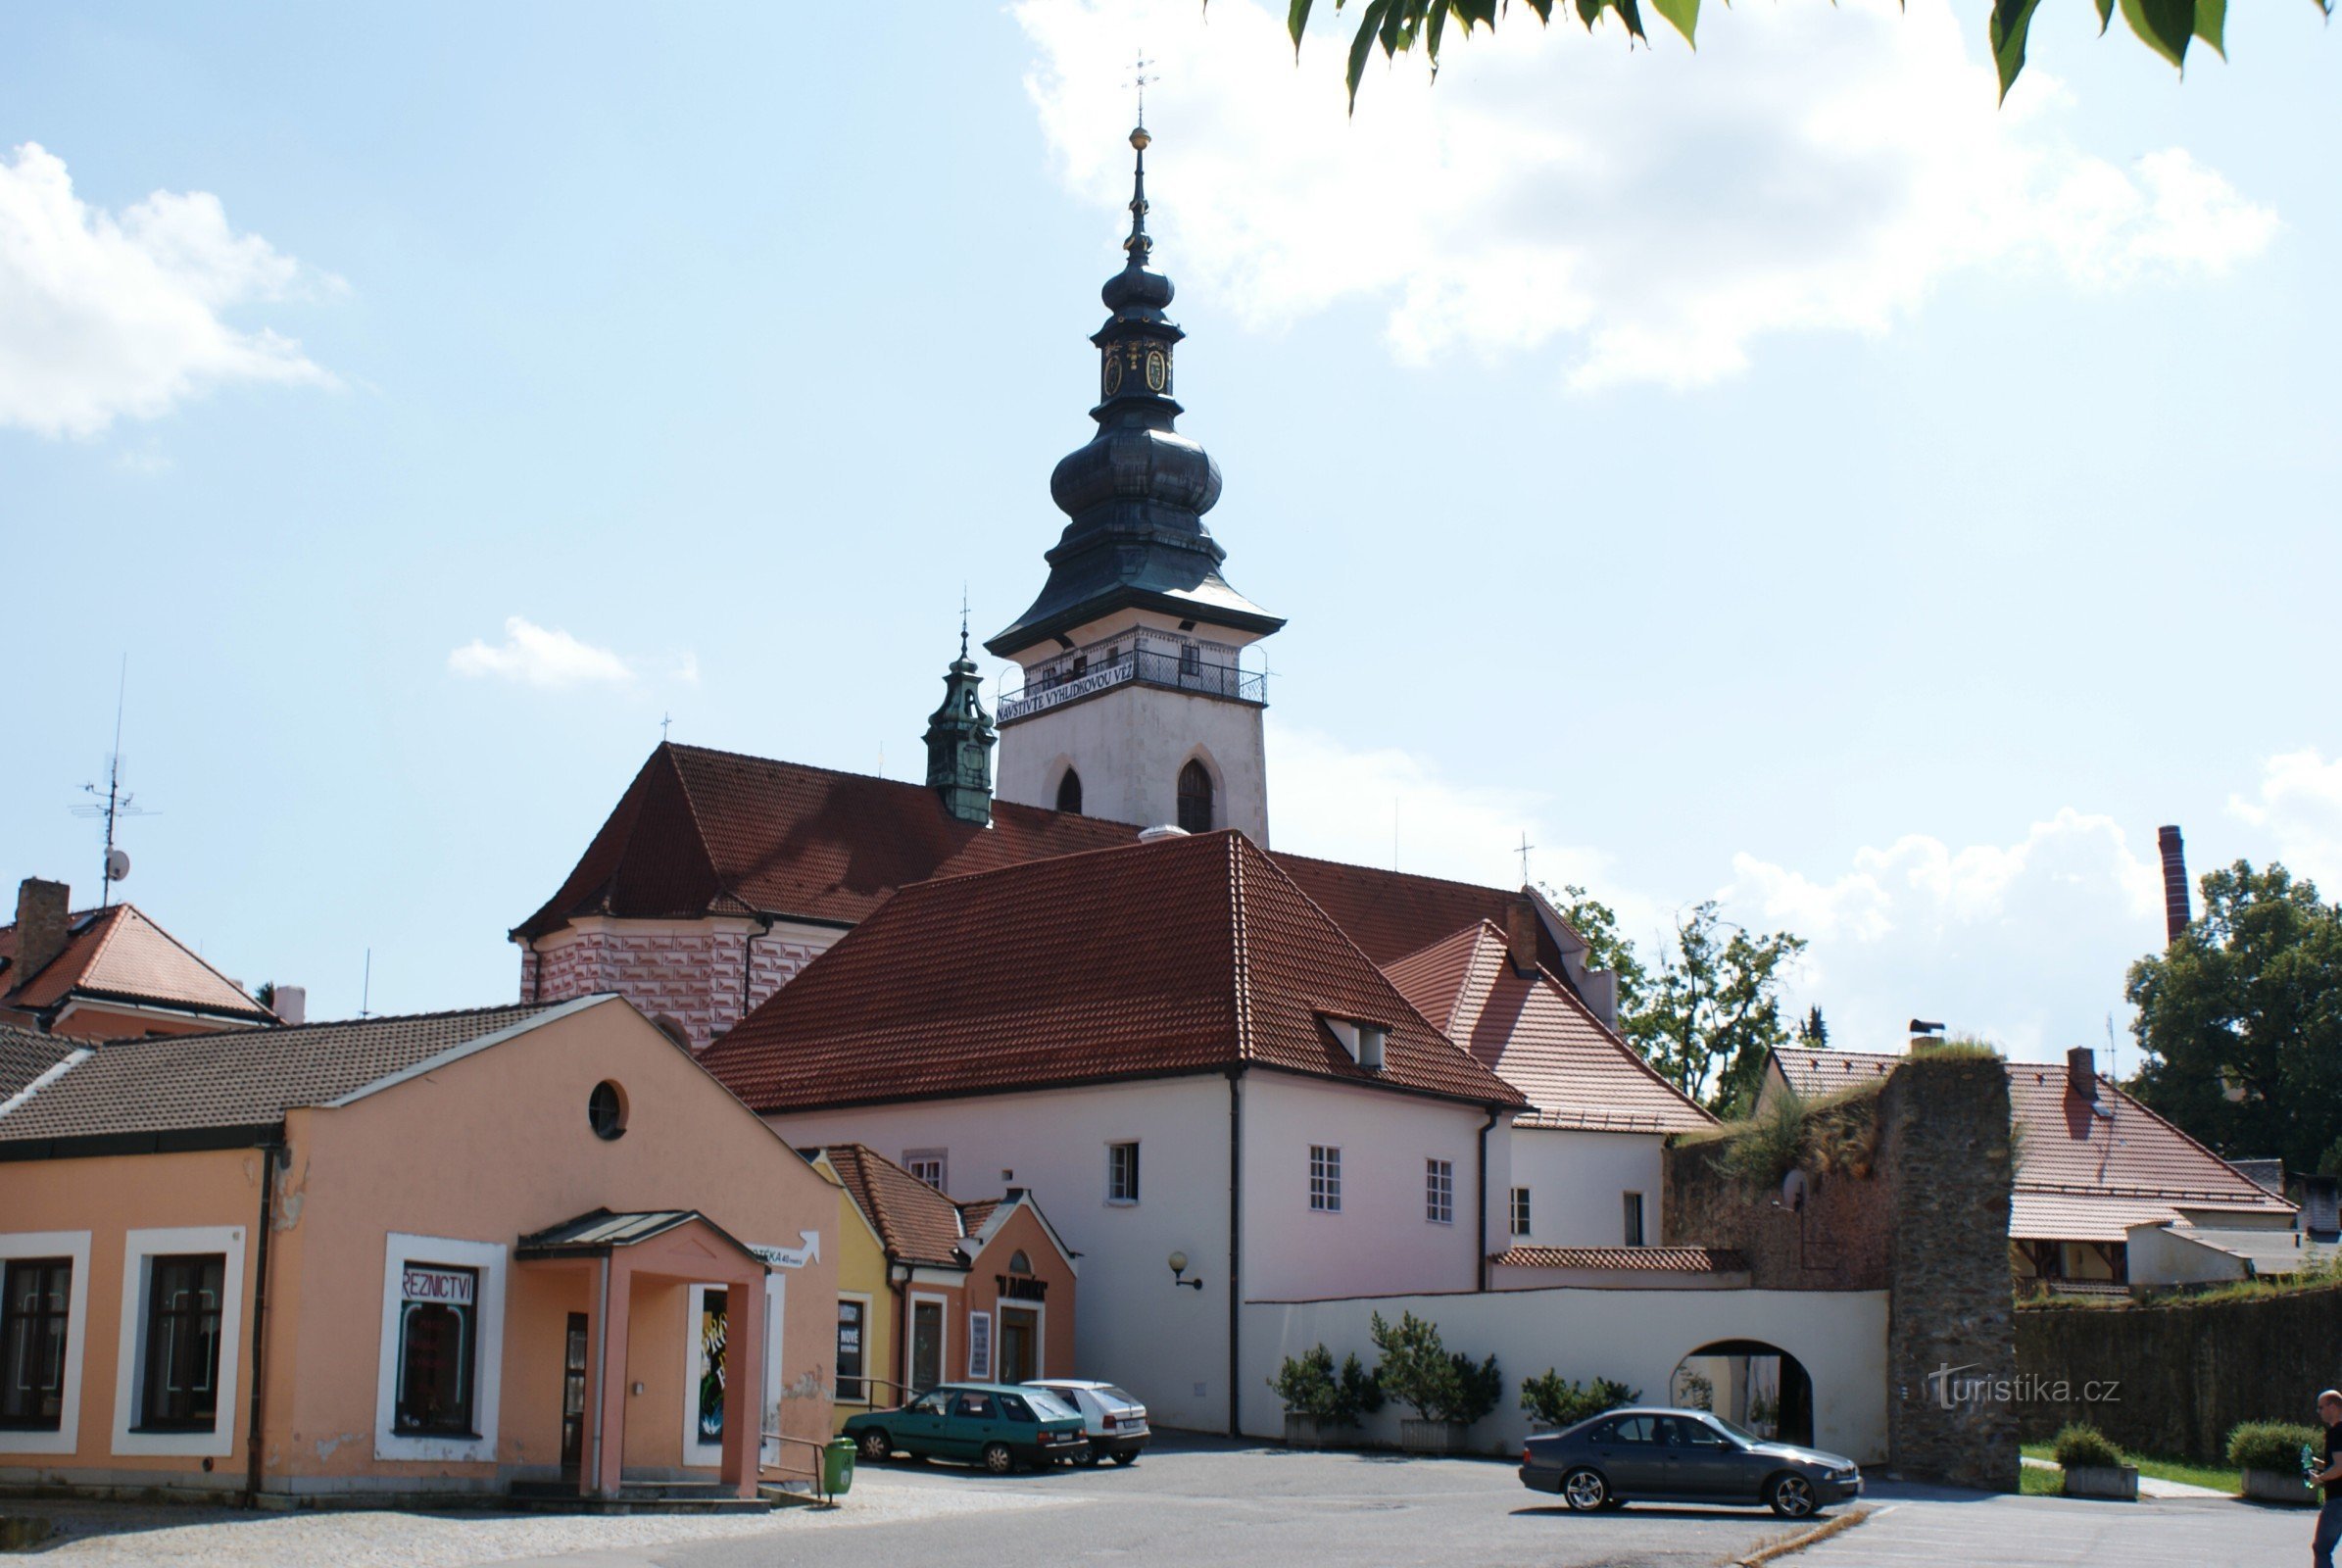 Pelhřimov - Vương cung thánh đường St. Bartholomew với tháp quan sát